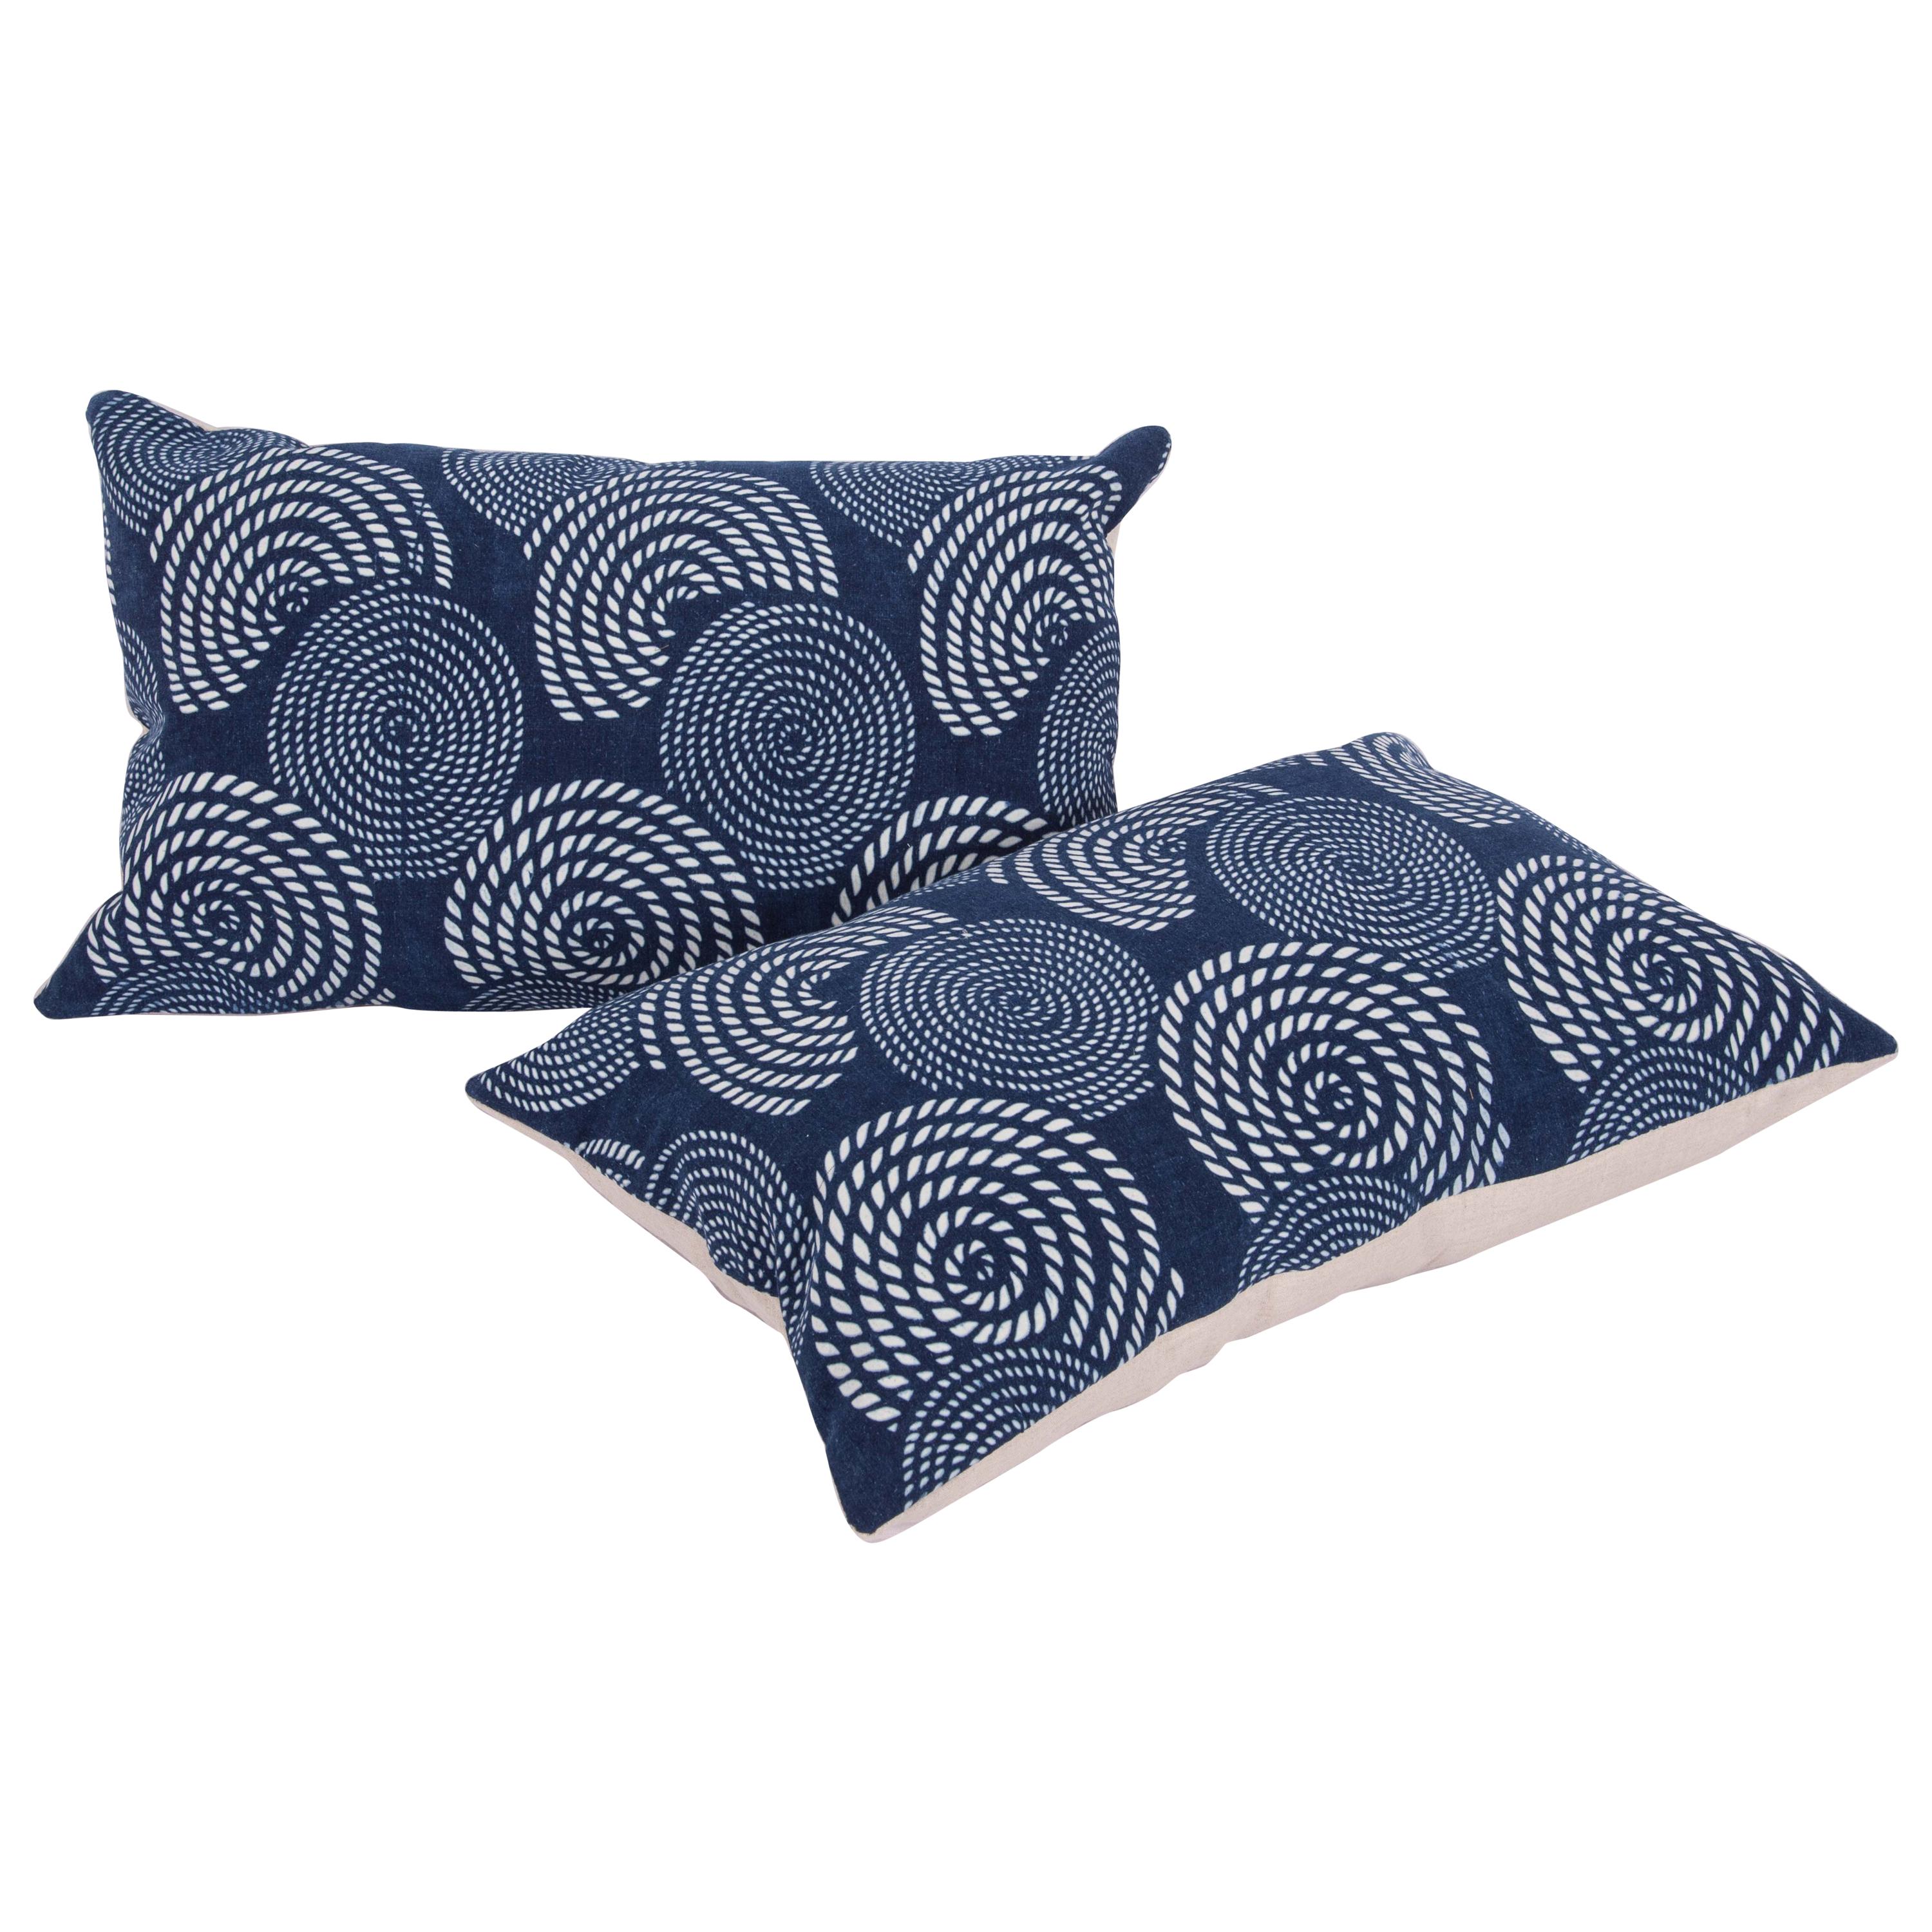 Boîtes d'oreillers contemporaines fabriquées à partir d'un tissu Miao indigo teint au résiste